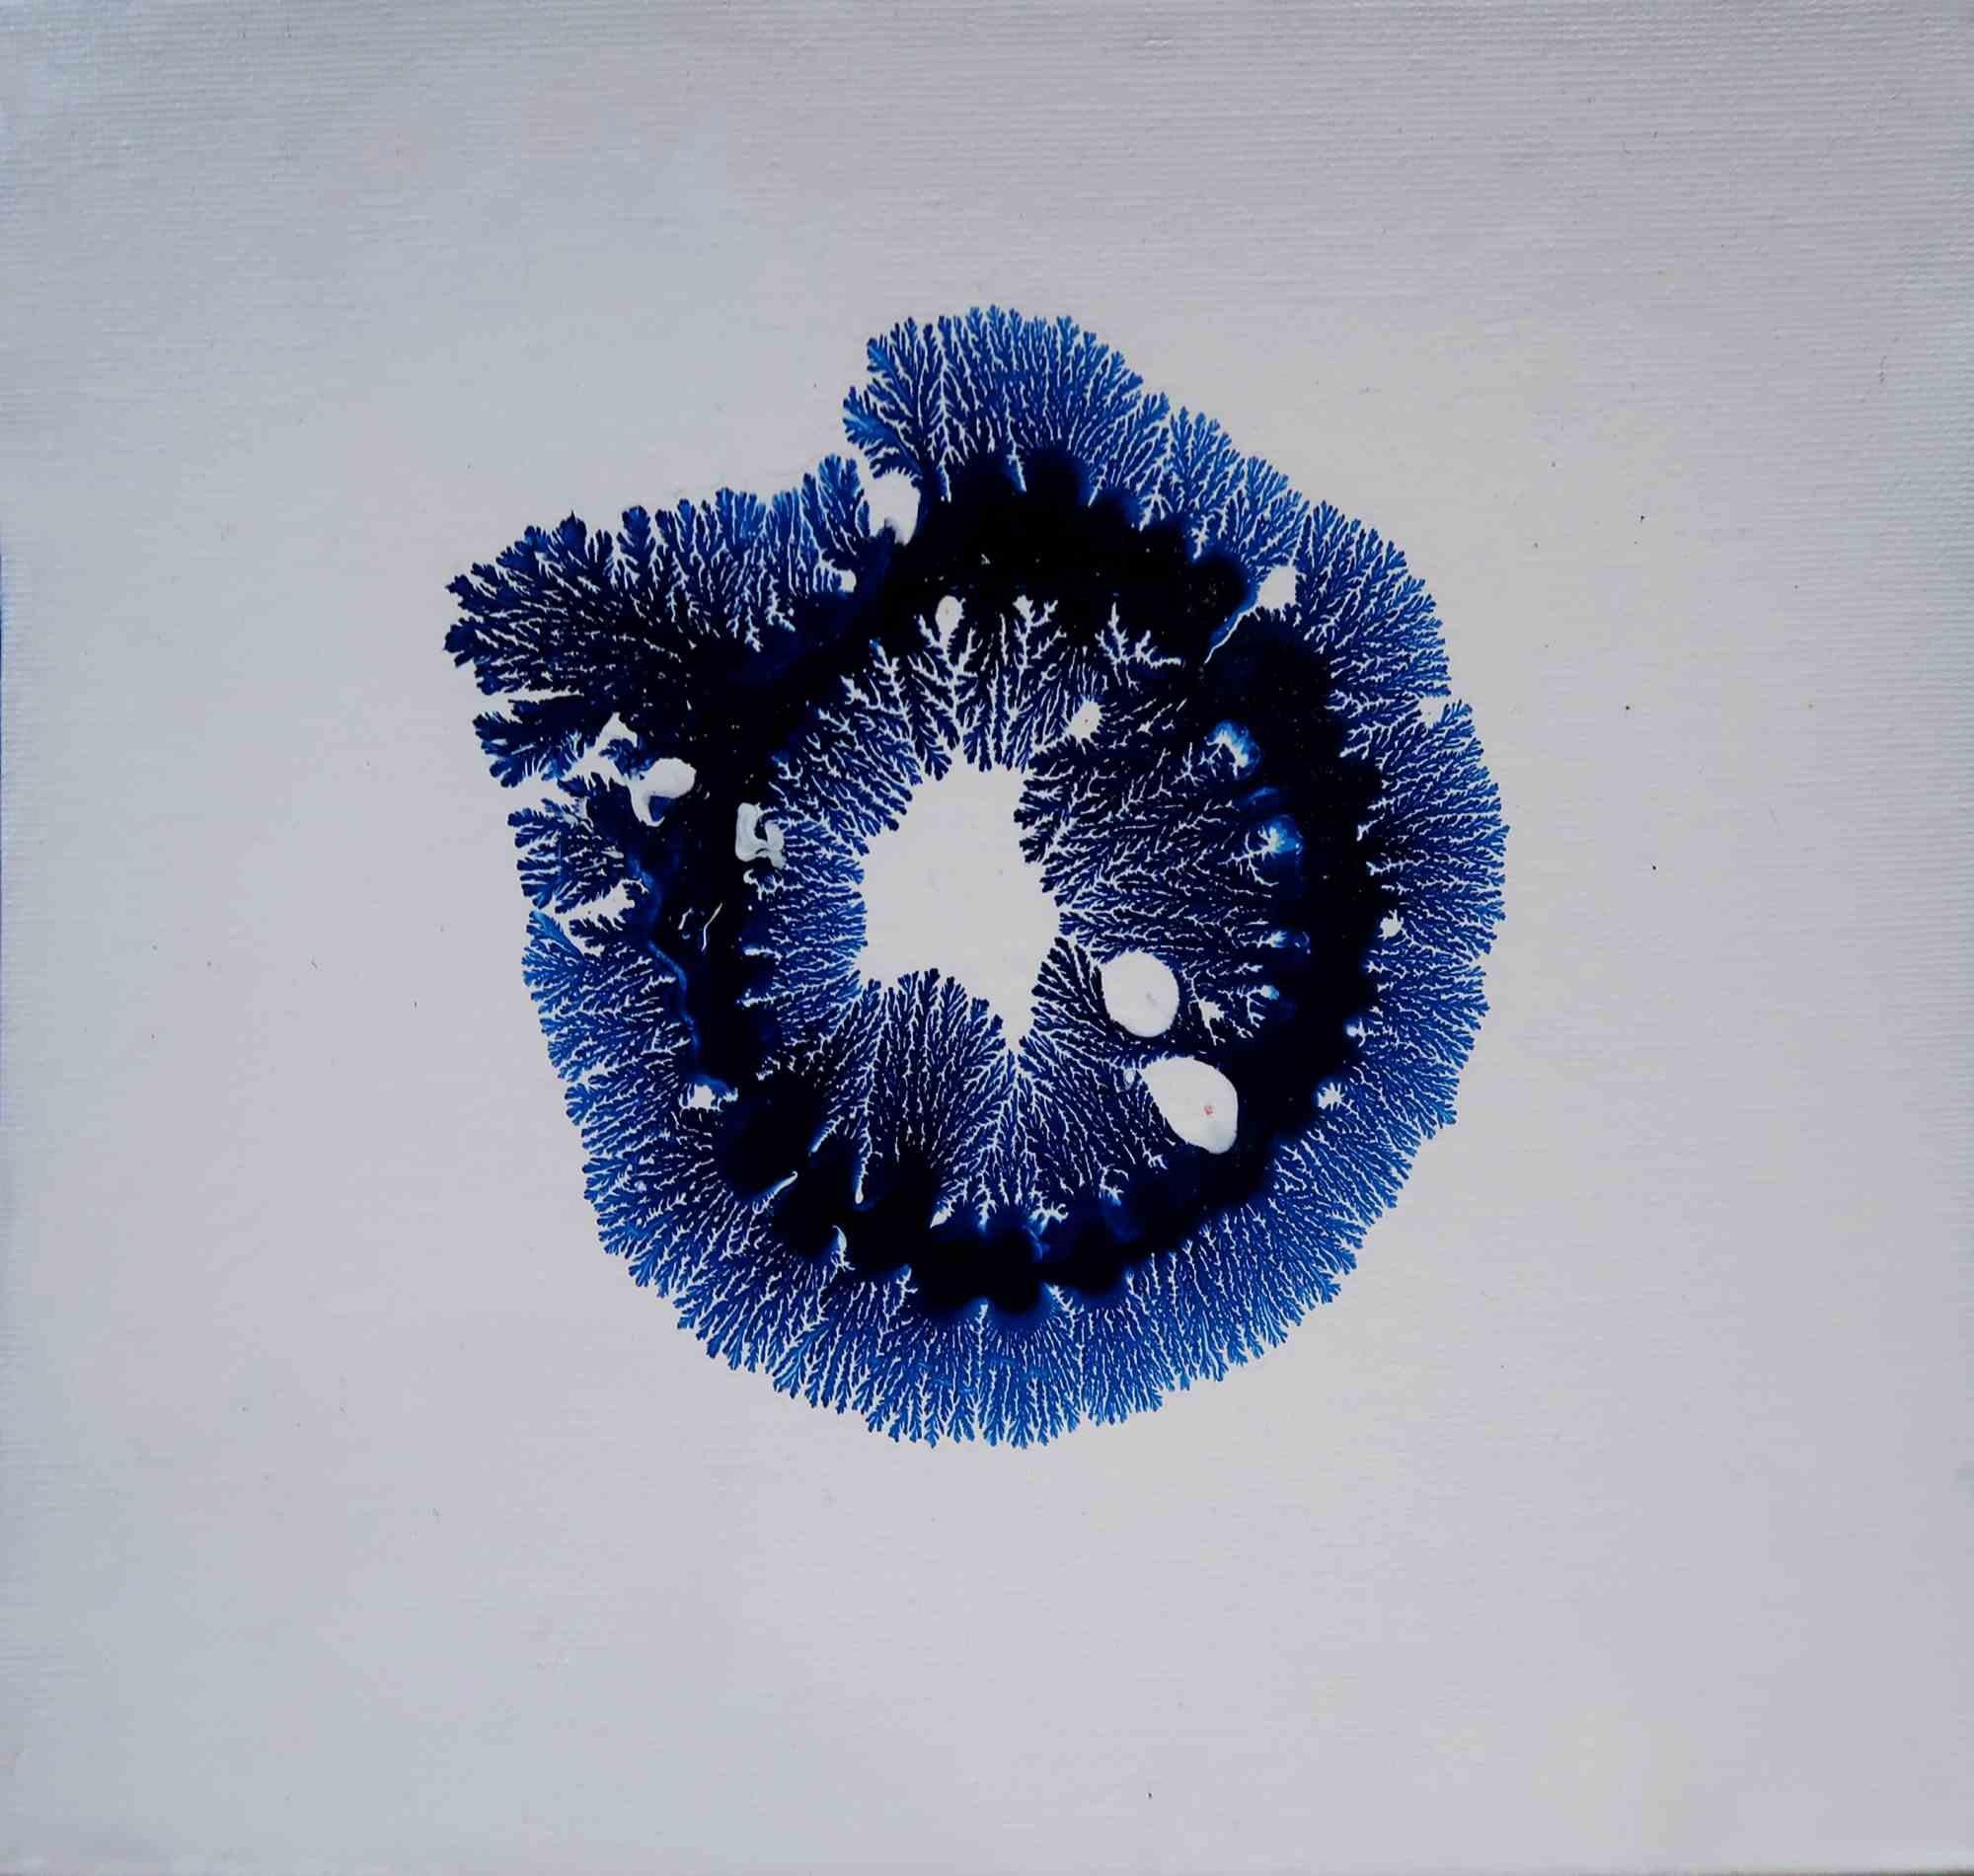 Amanda Ludovisi Nude - Blue Life - Painting - 2020s